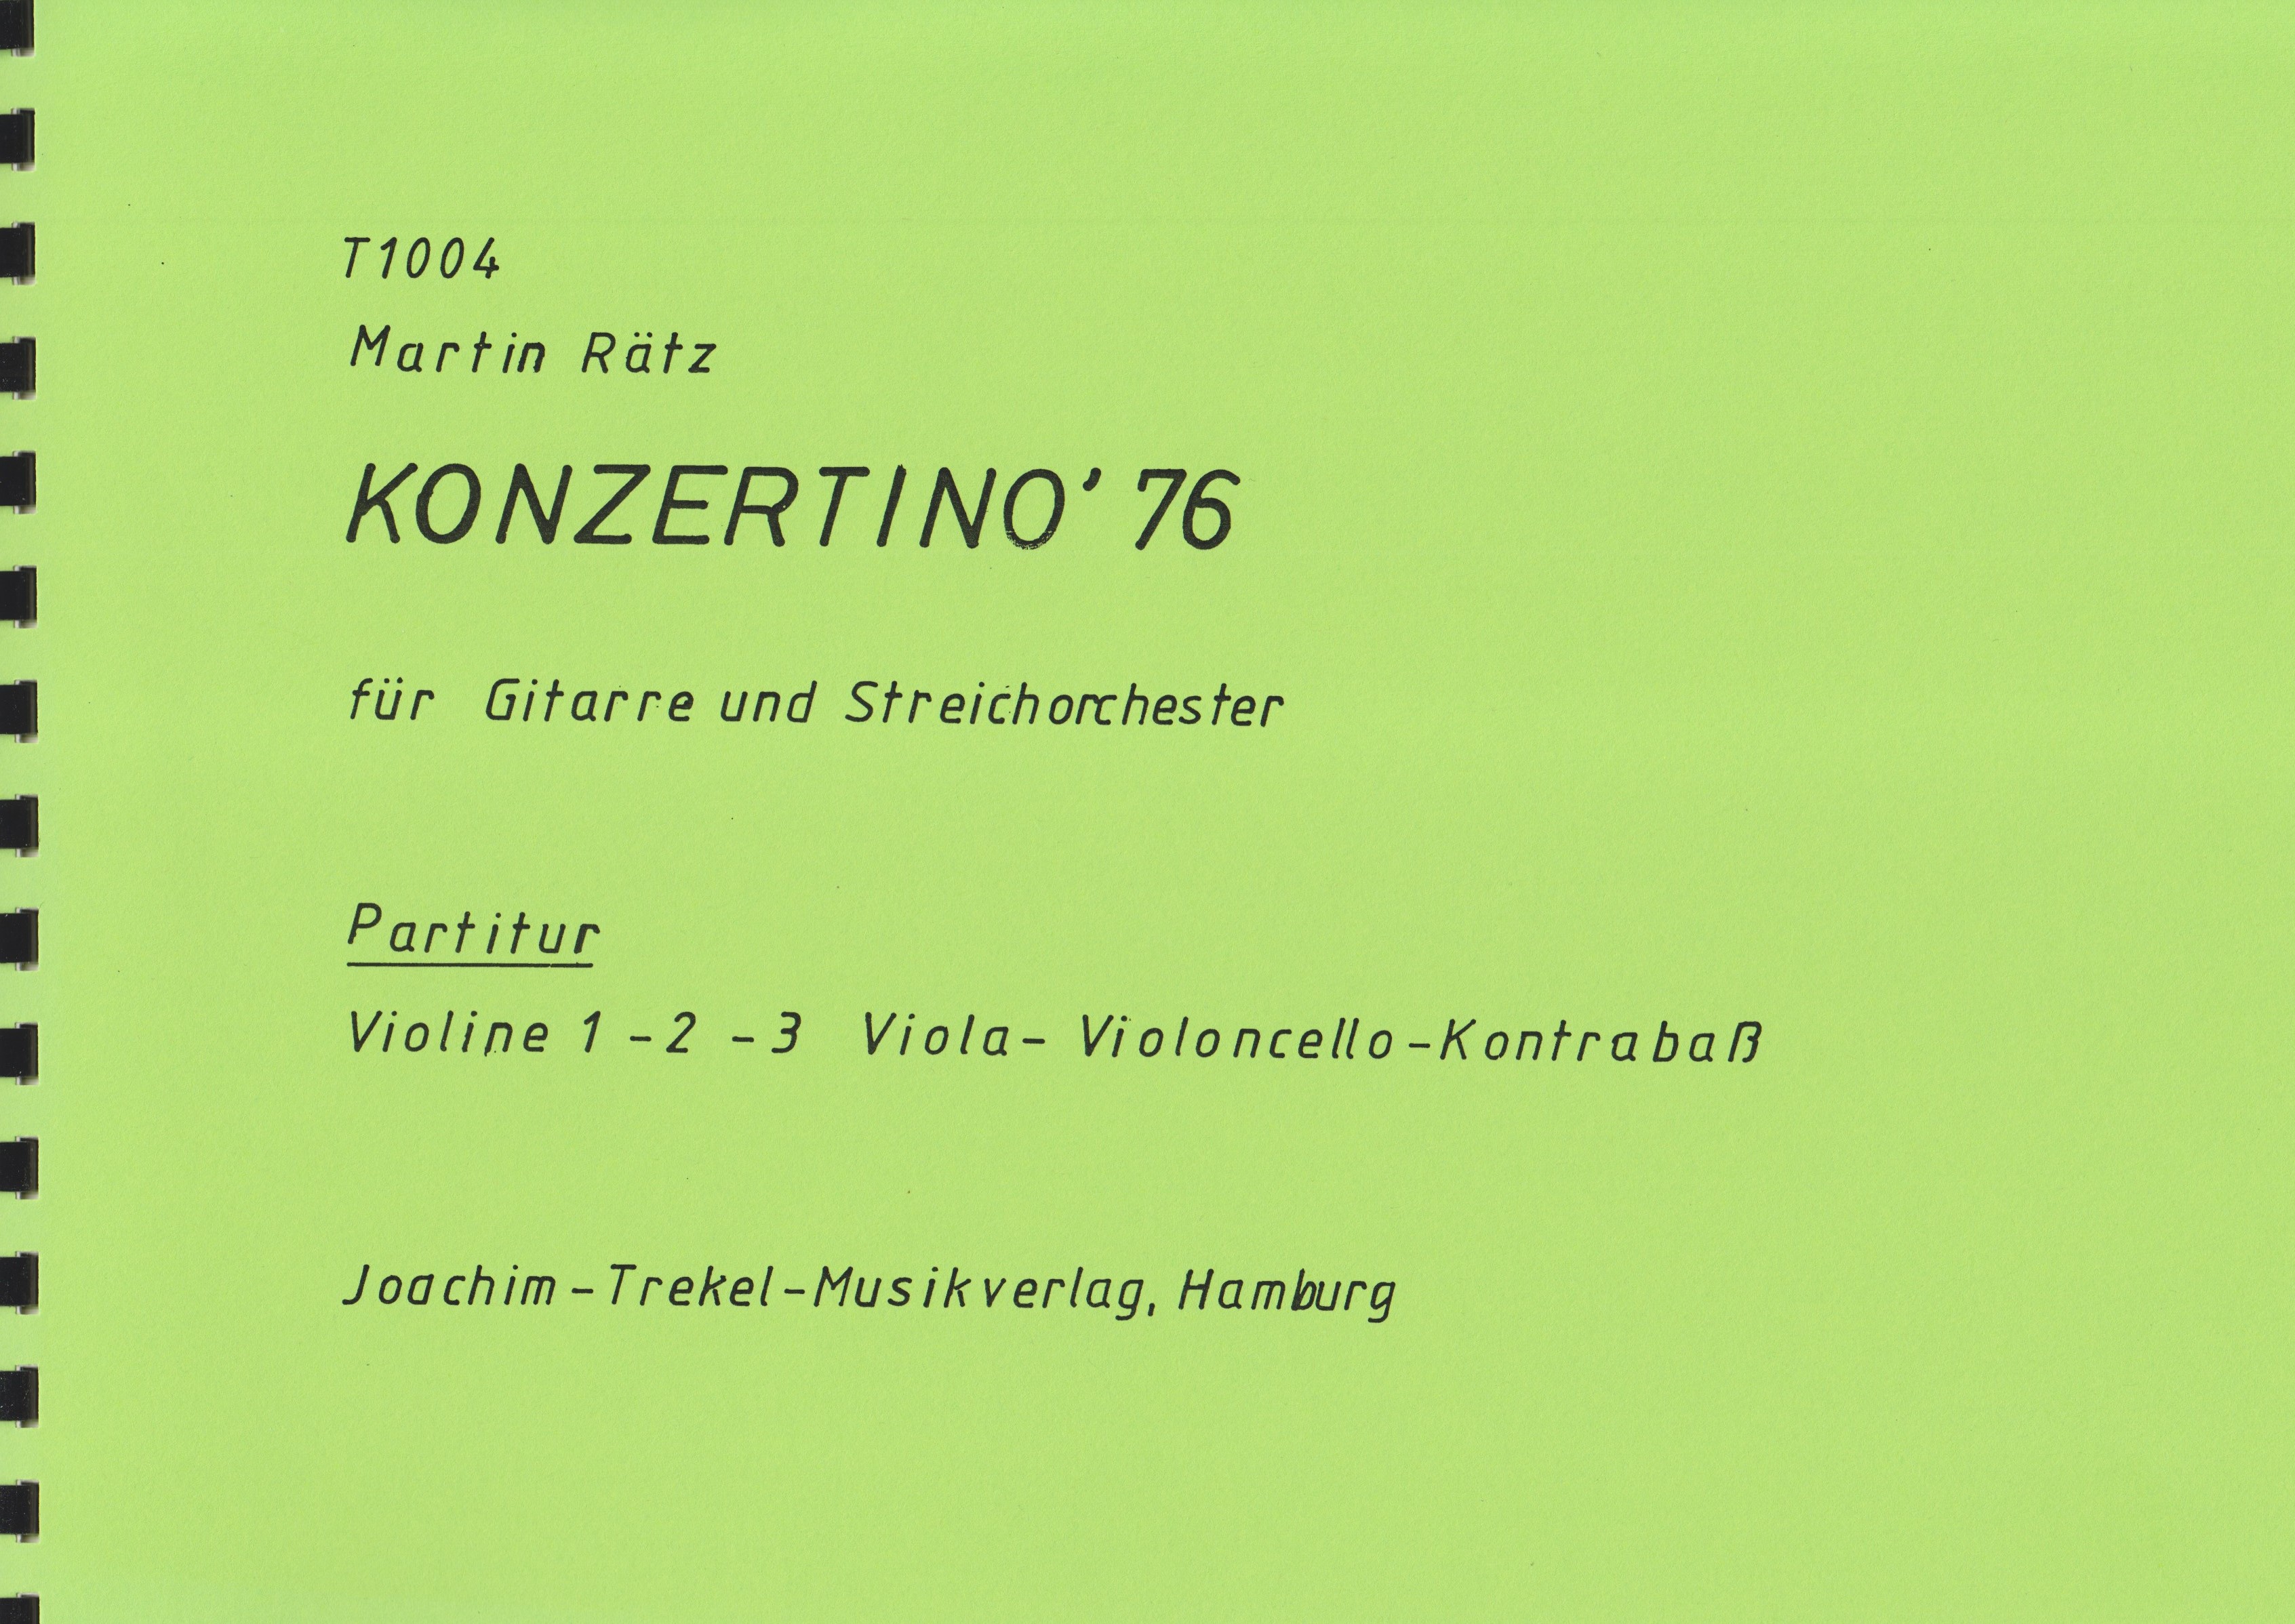 Konzertino '76